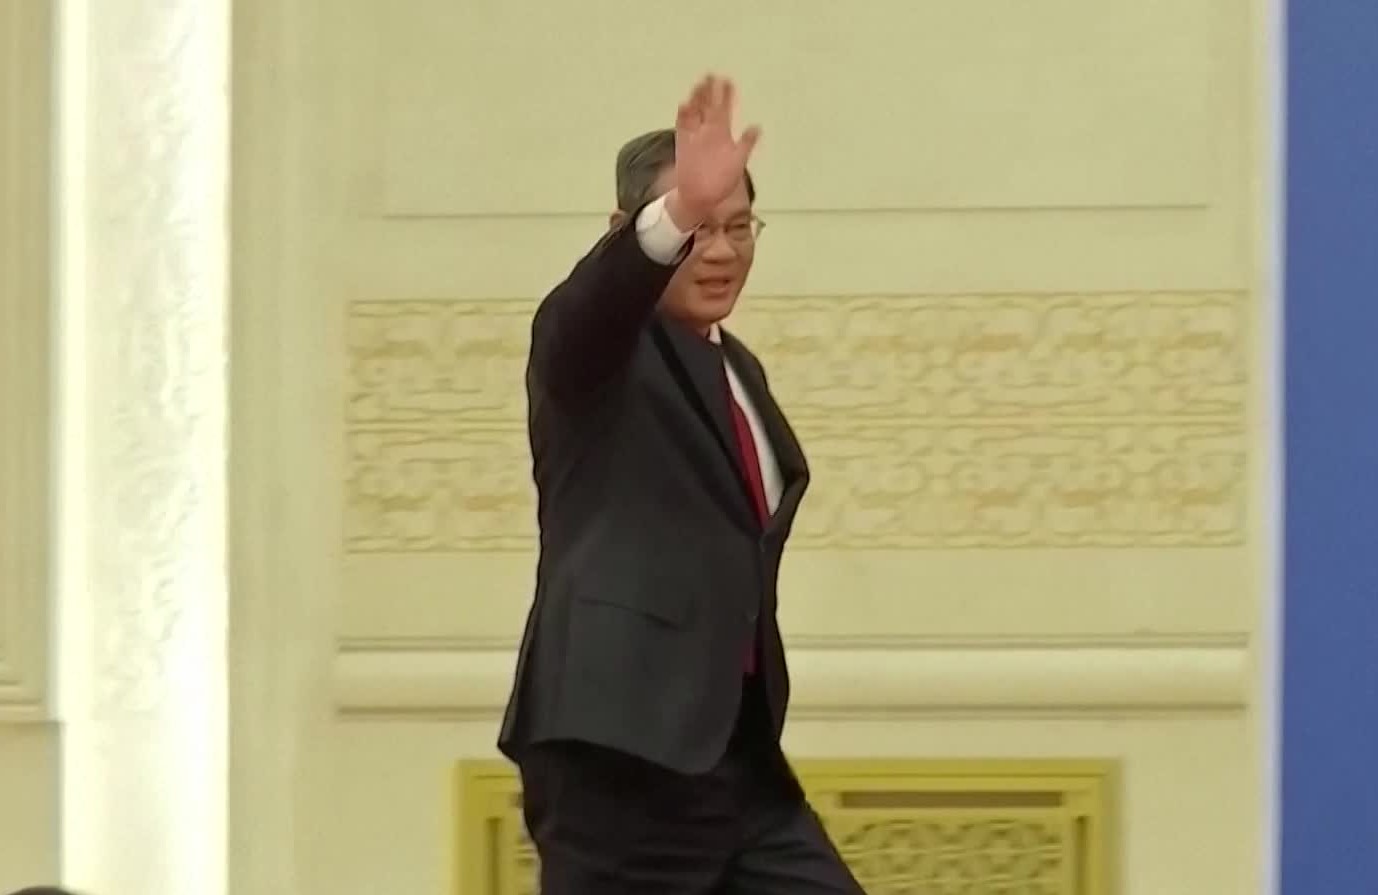 리창 총리는 13일 취임 뒤 첫 내외신 기자회견장에 입장할 때 손을 흔들며 비교적 여유 있는 모습을 보였다. (사진: 로이터TV 캡처)